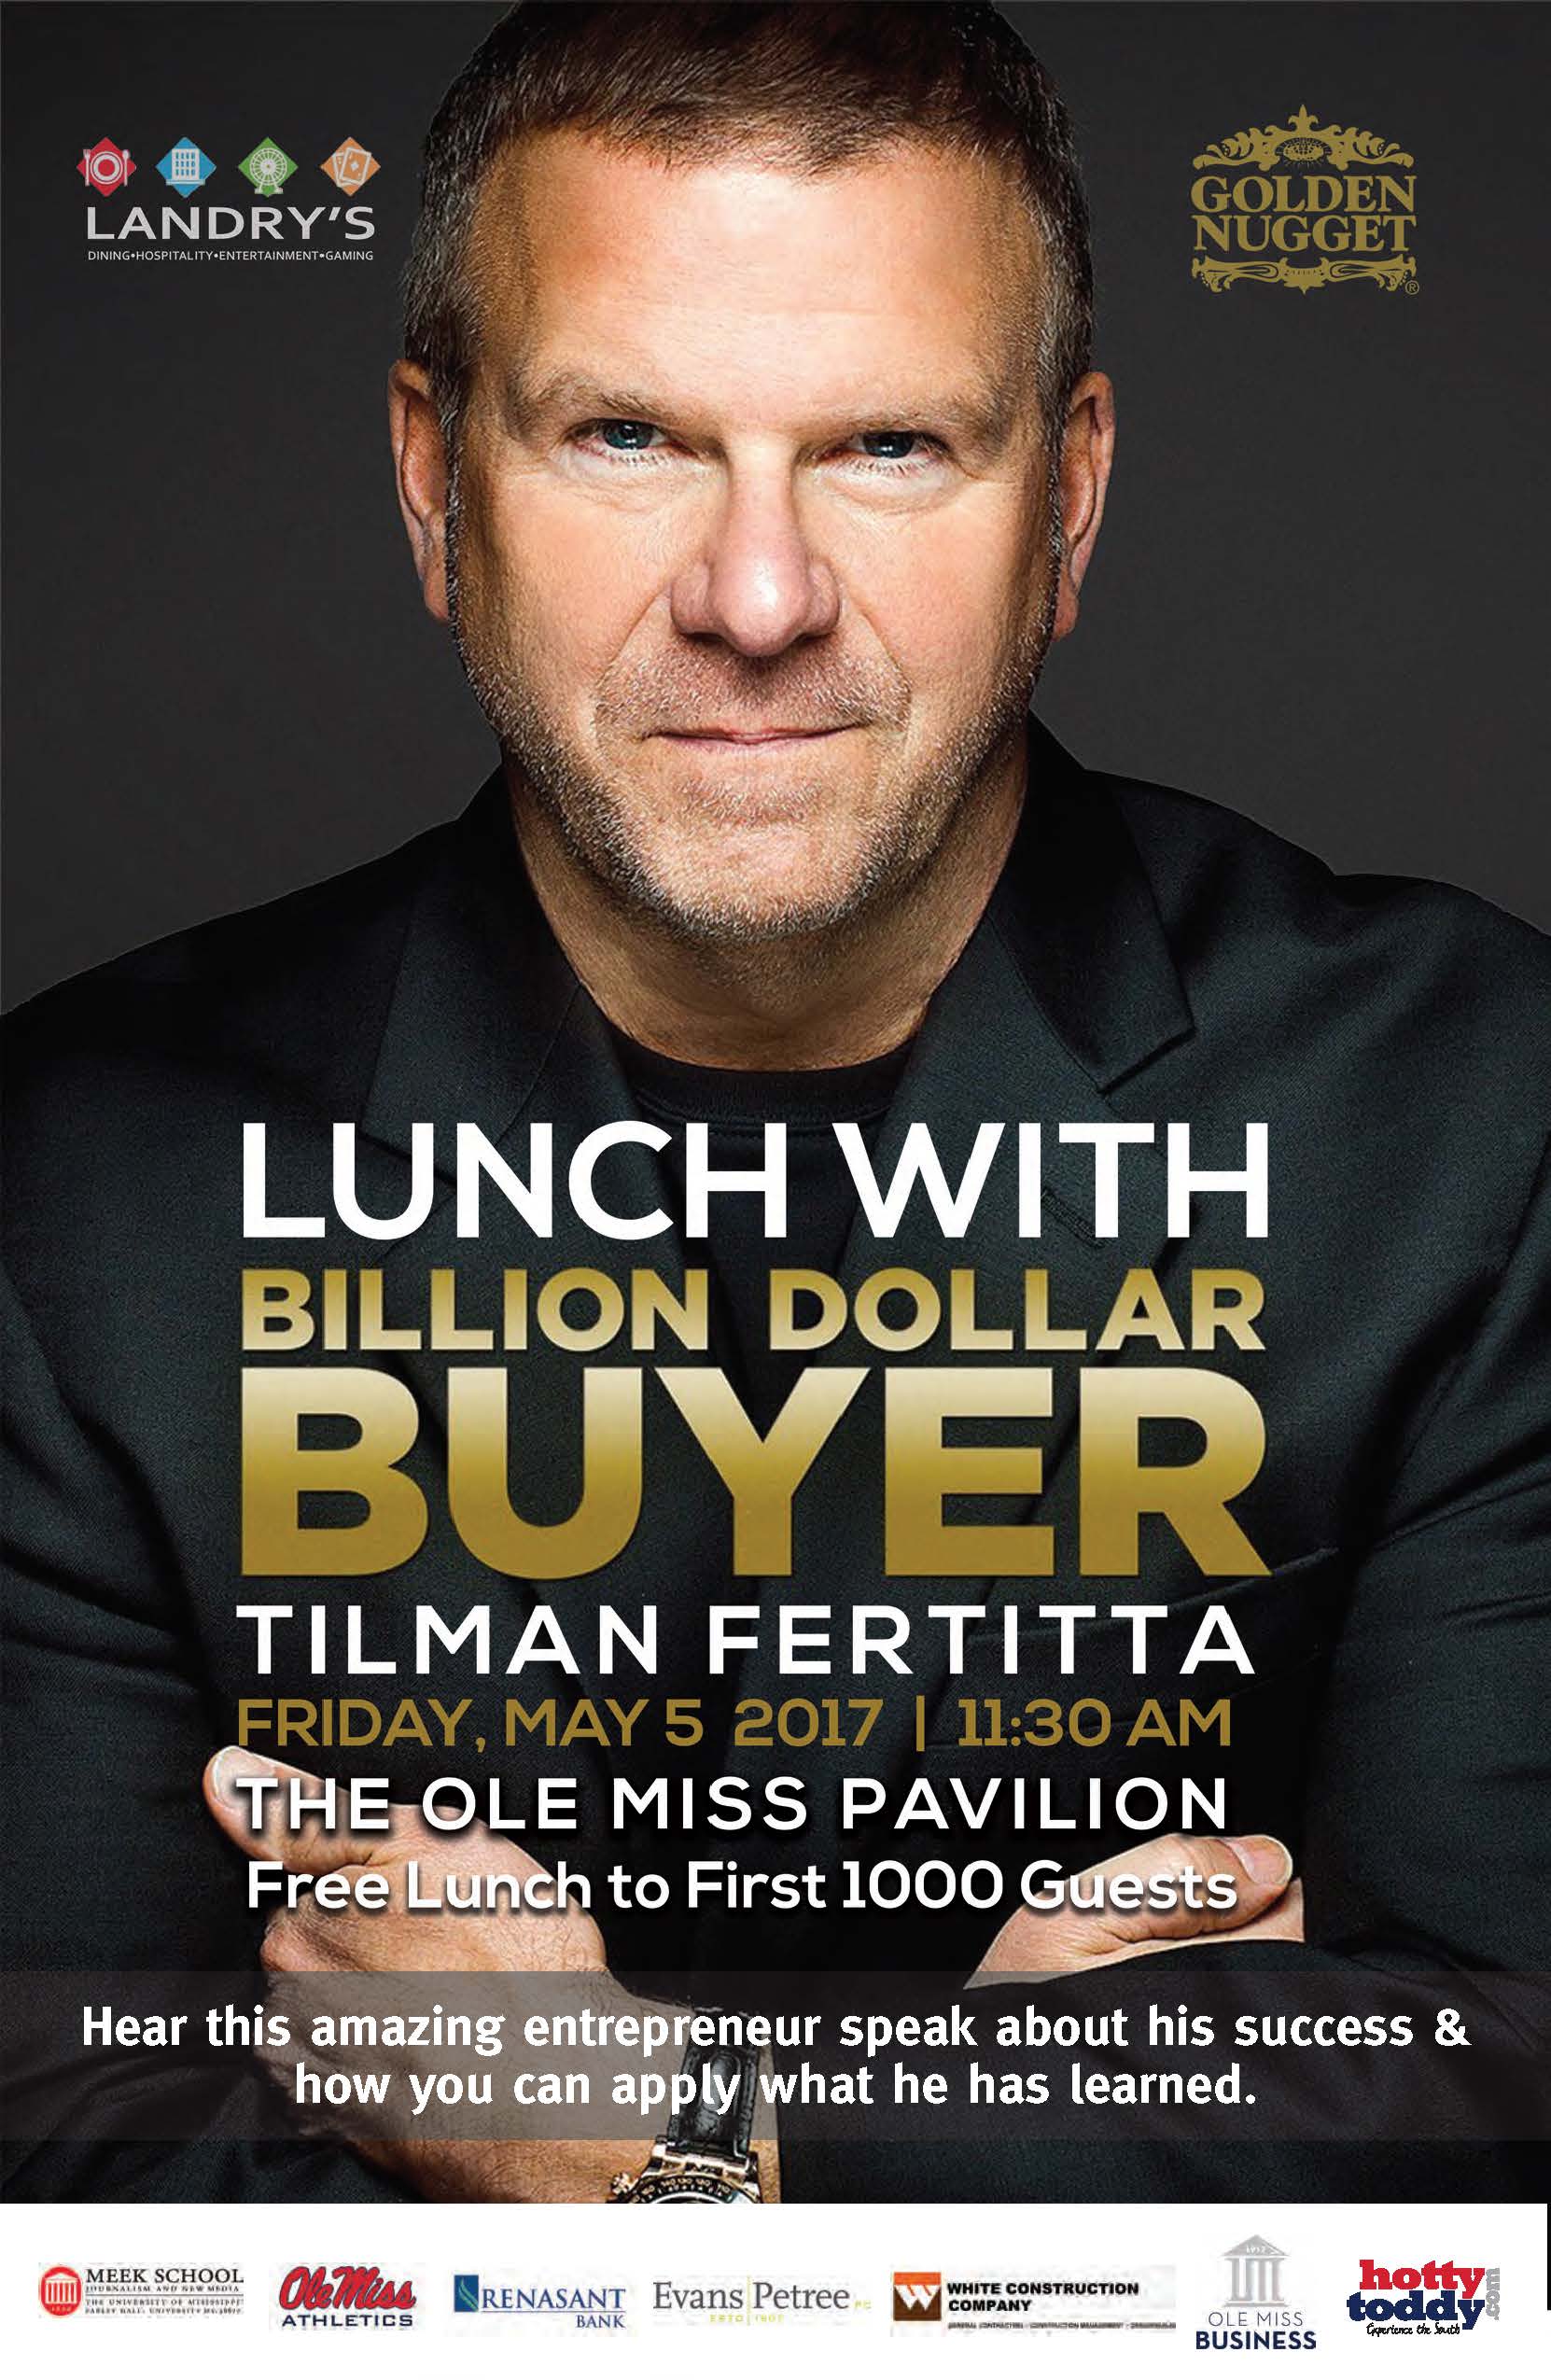 Billion Dollar Buyer Tilman Fertitta to speak at Ole Miss Pavilion Friday May 5